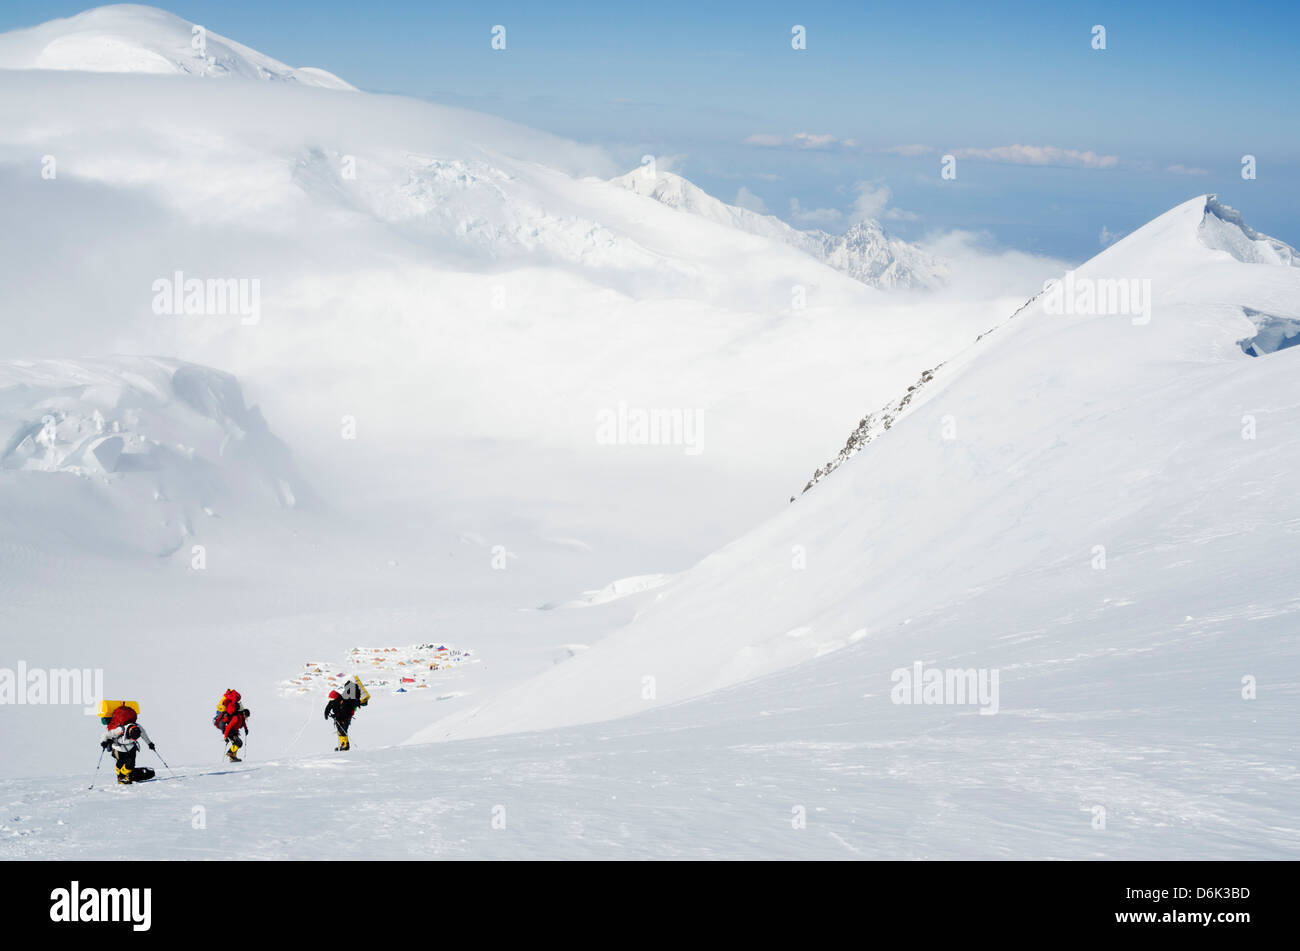 verlassen Lager 3, Klettern Expedition auf Mt McKinley, 6194m, Denali National Park, Alaska, Vereinigte Staaten von Amerika, USA Stockfoto